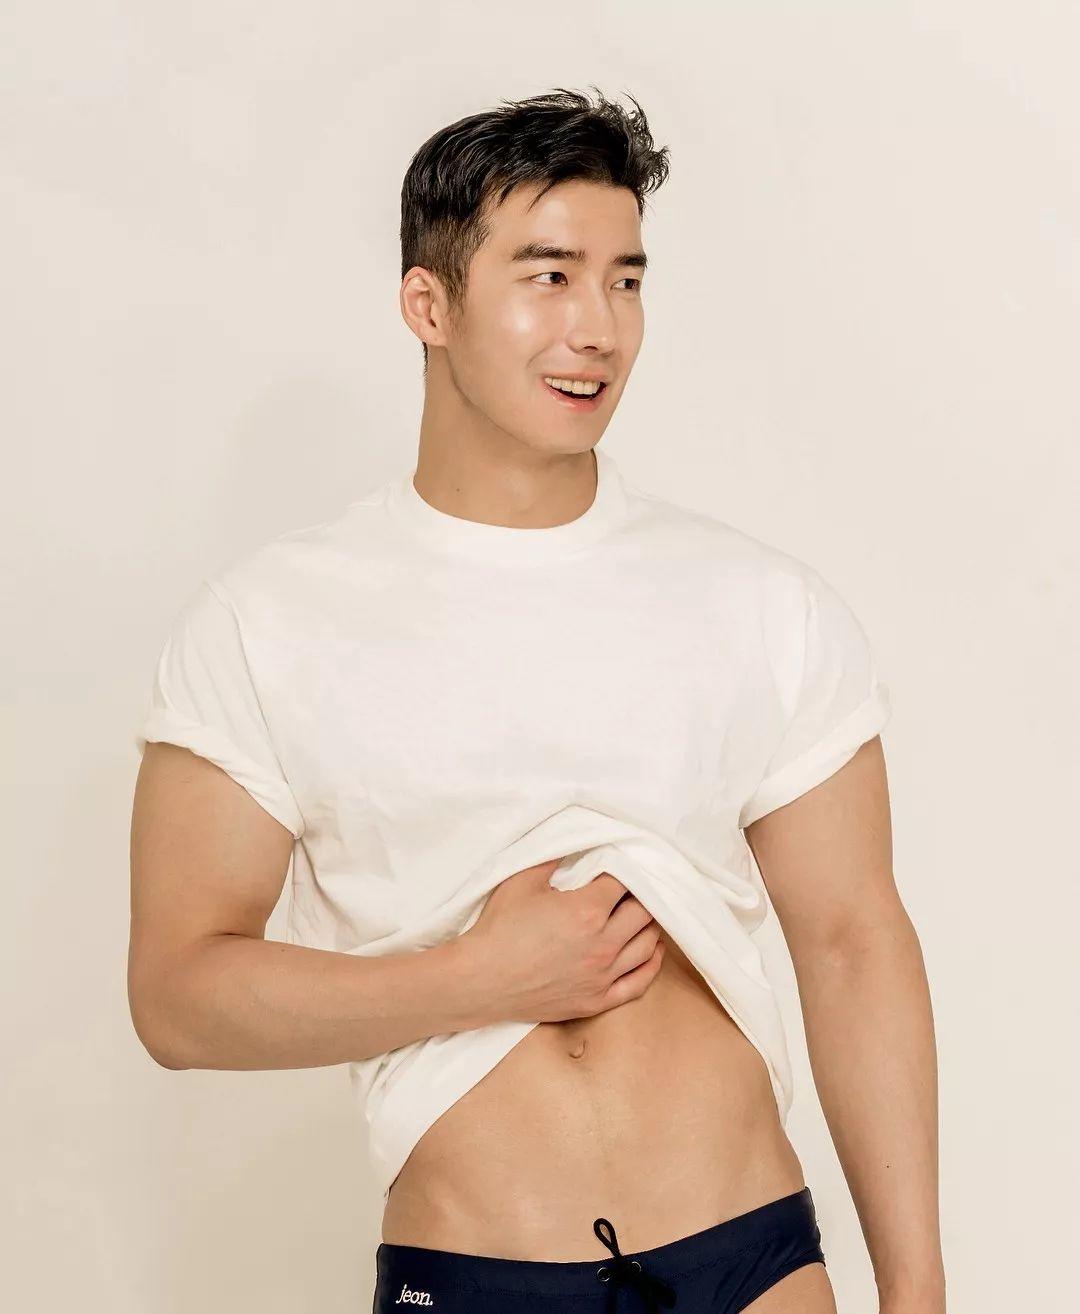 来自韩国的平面模特，谁会拒绝这样一个倒三角身材的男人呢？